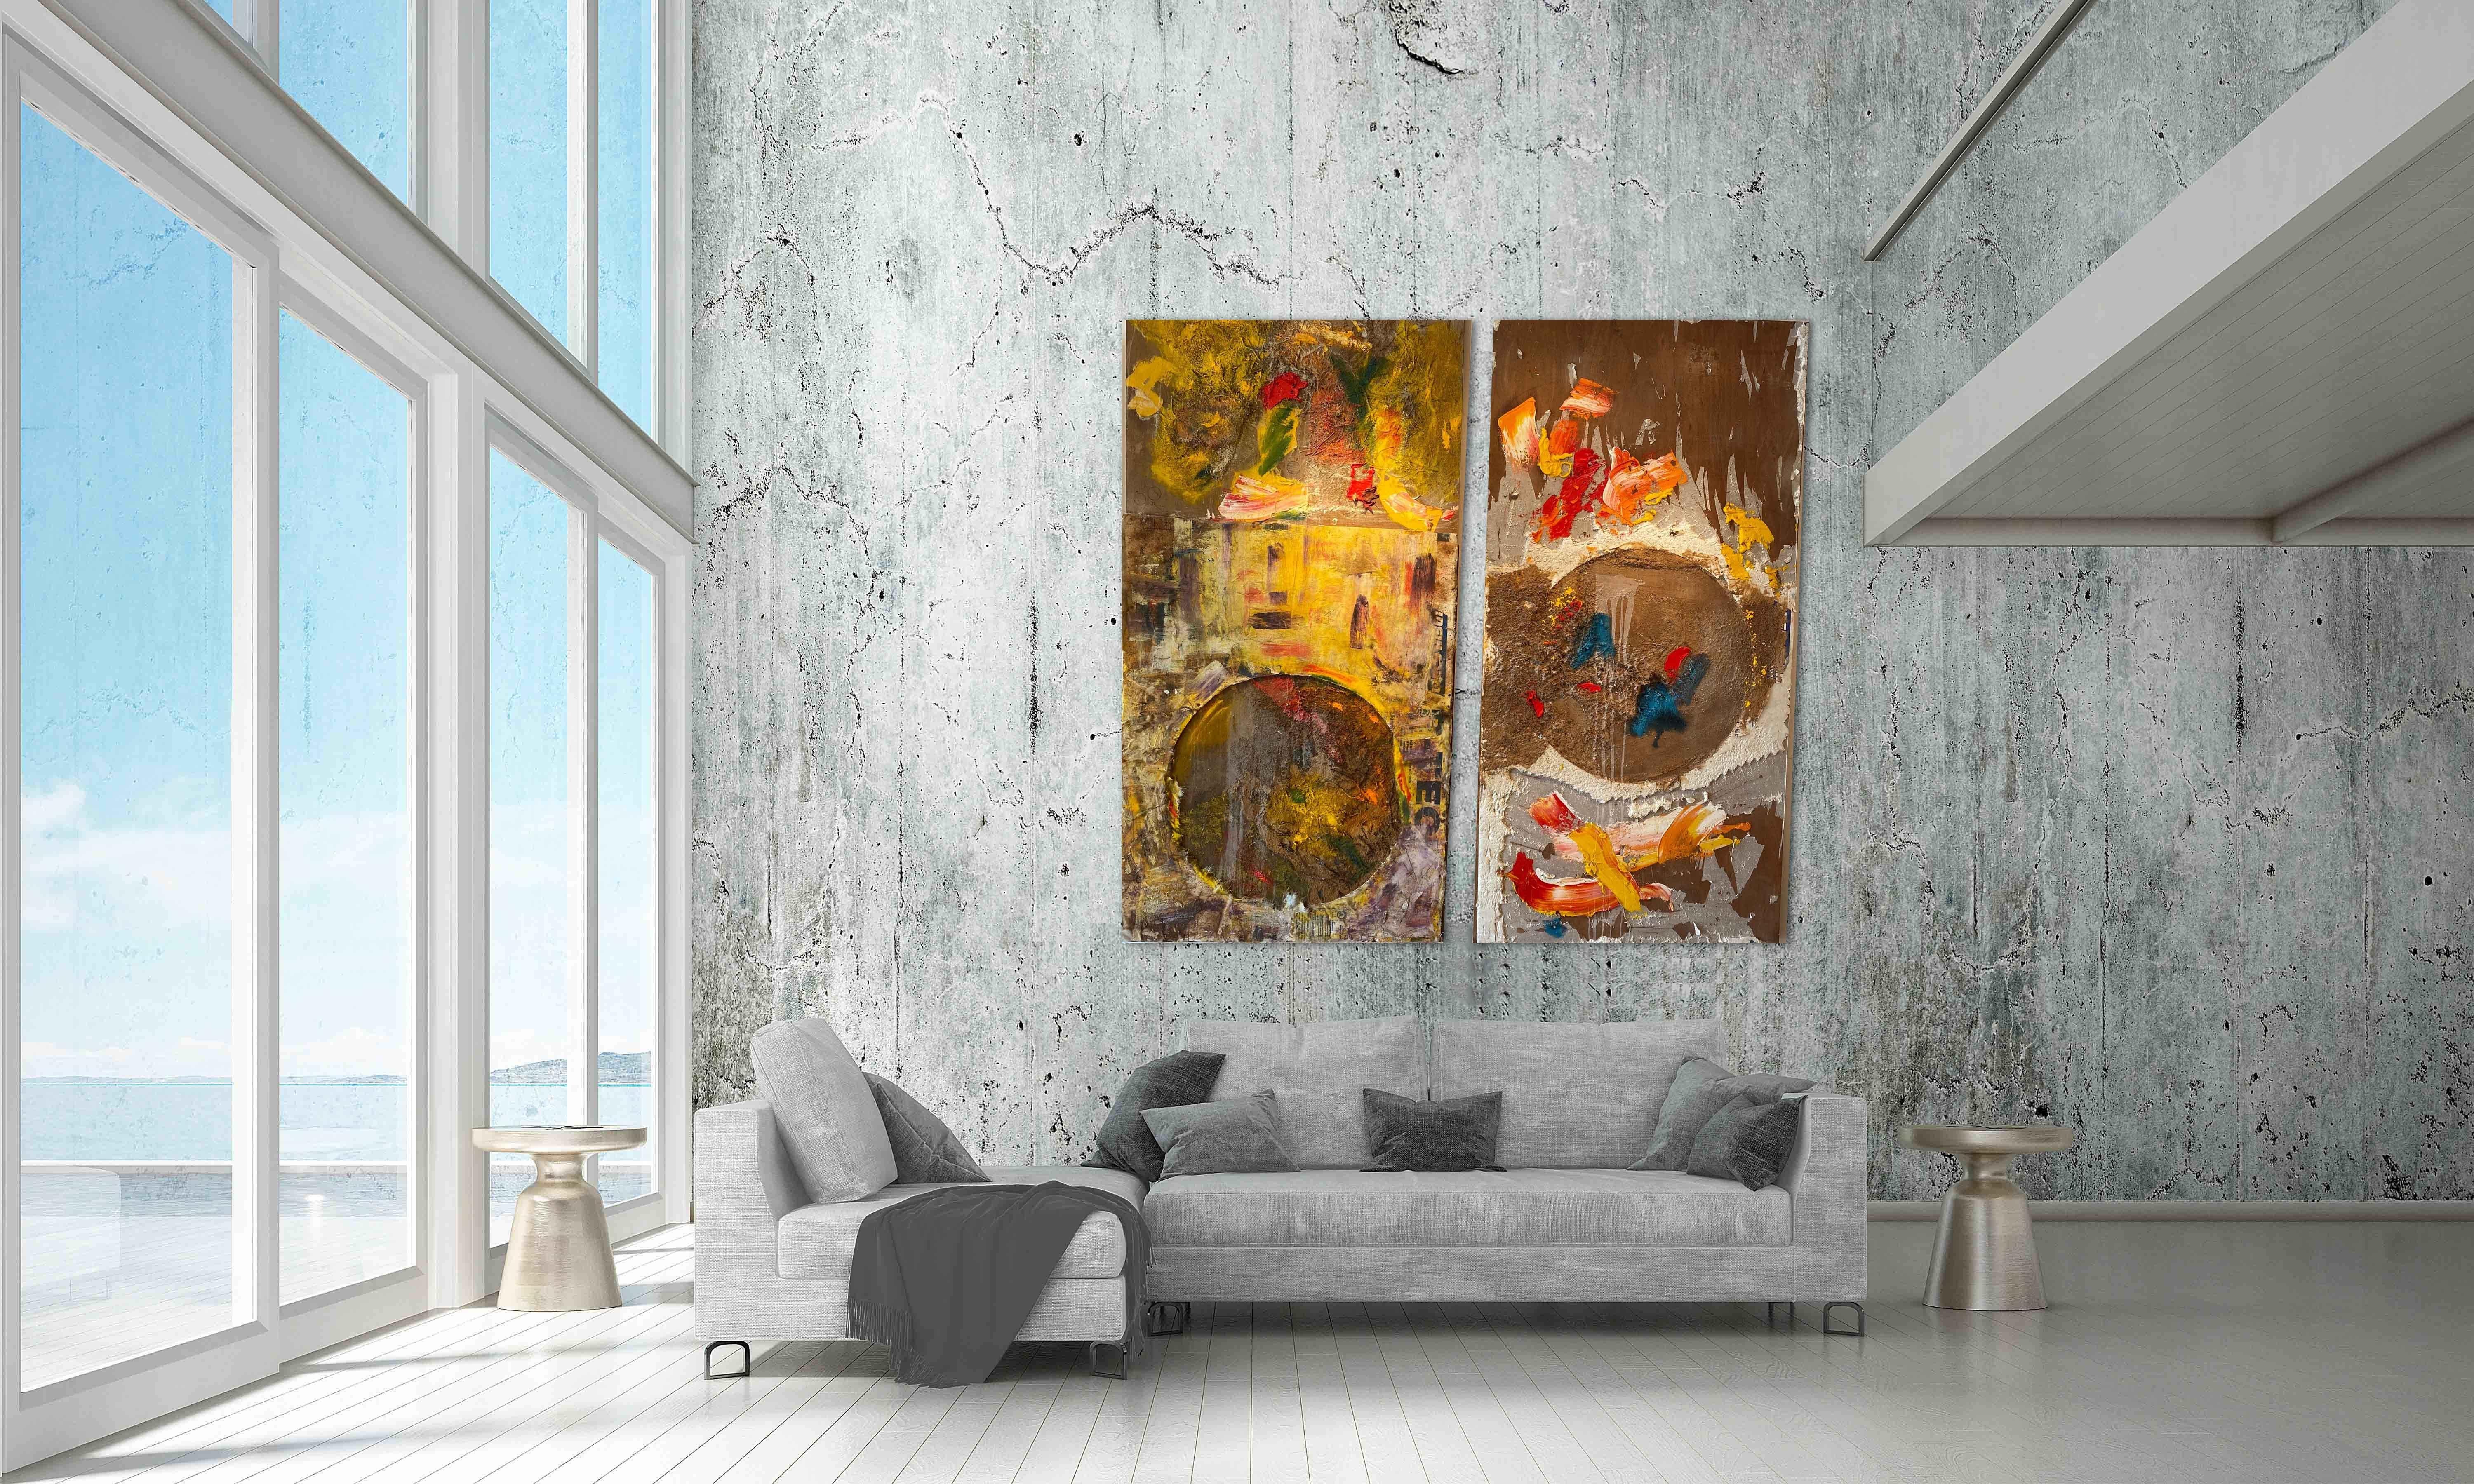 Sea of Love, Mixed Media, zeitgenössisch, abstrakt, 1,25 m x 2,25 m jeder Tafel von Steave (Abstrakt), Painting, von Steven H. Rehfeld